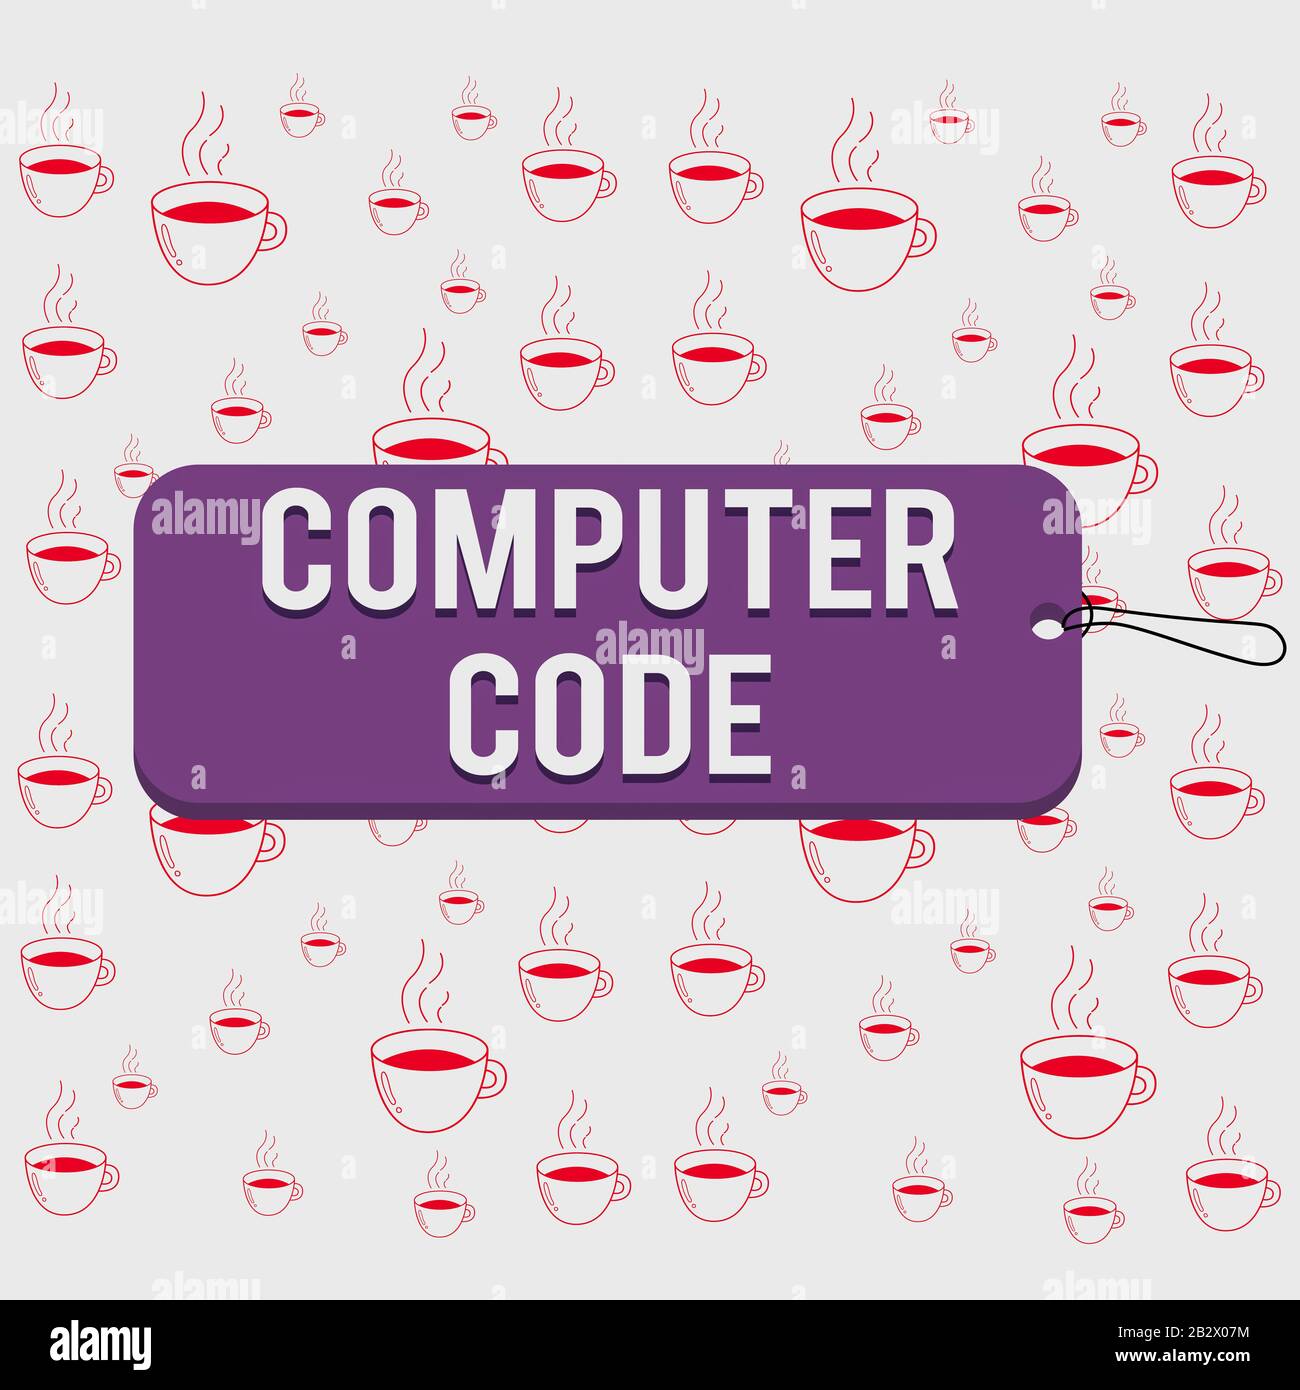 Code coding computer data developing development HTML program programming  screen software technology wallpaper, 5760x3840, 1098923